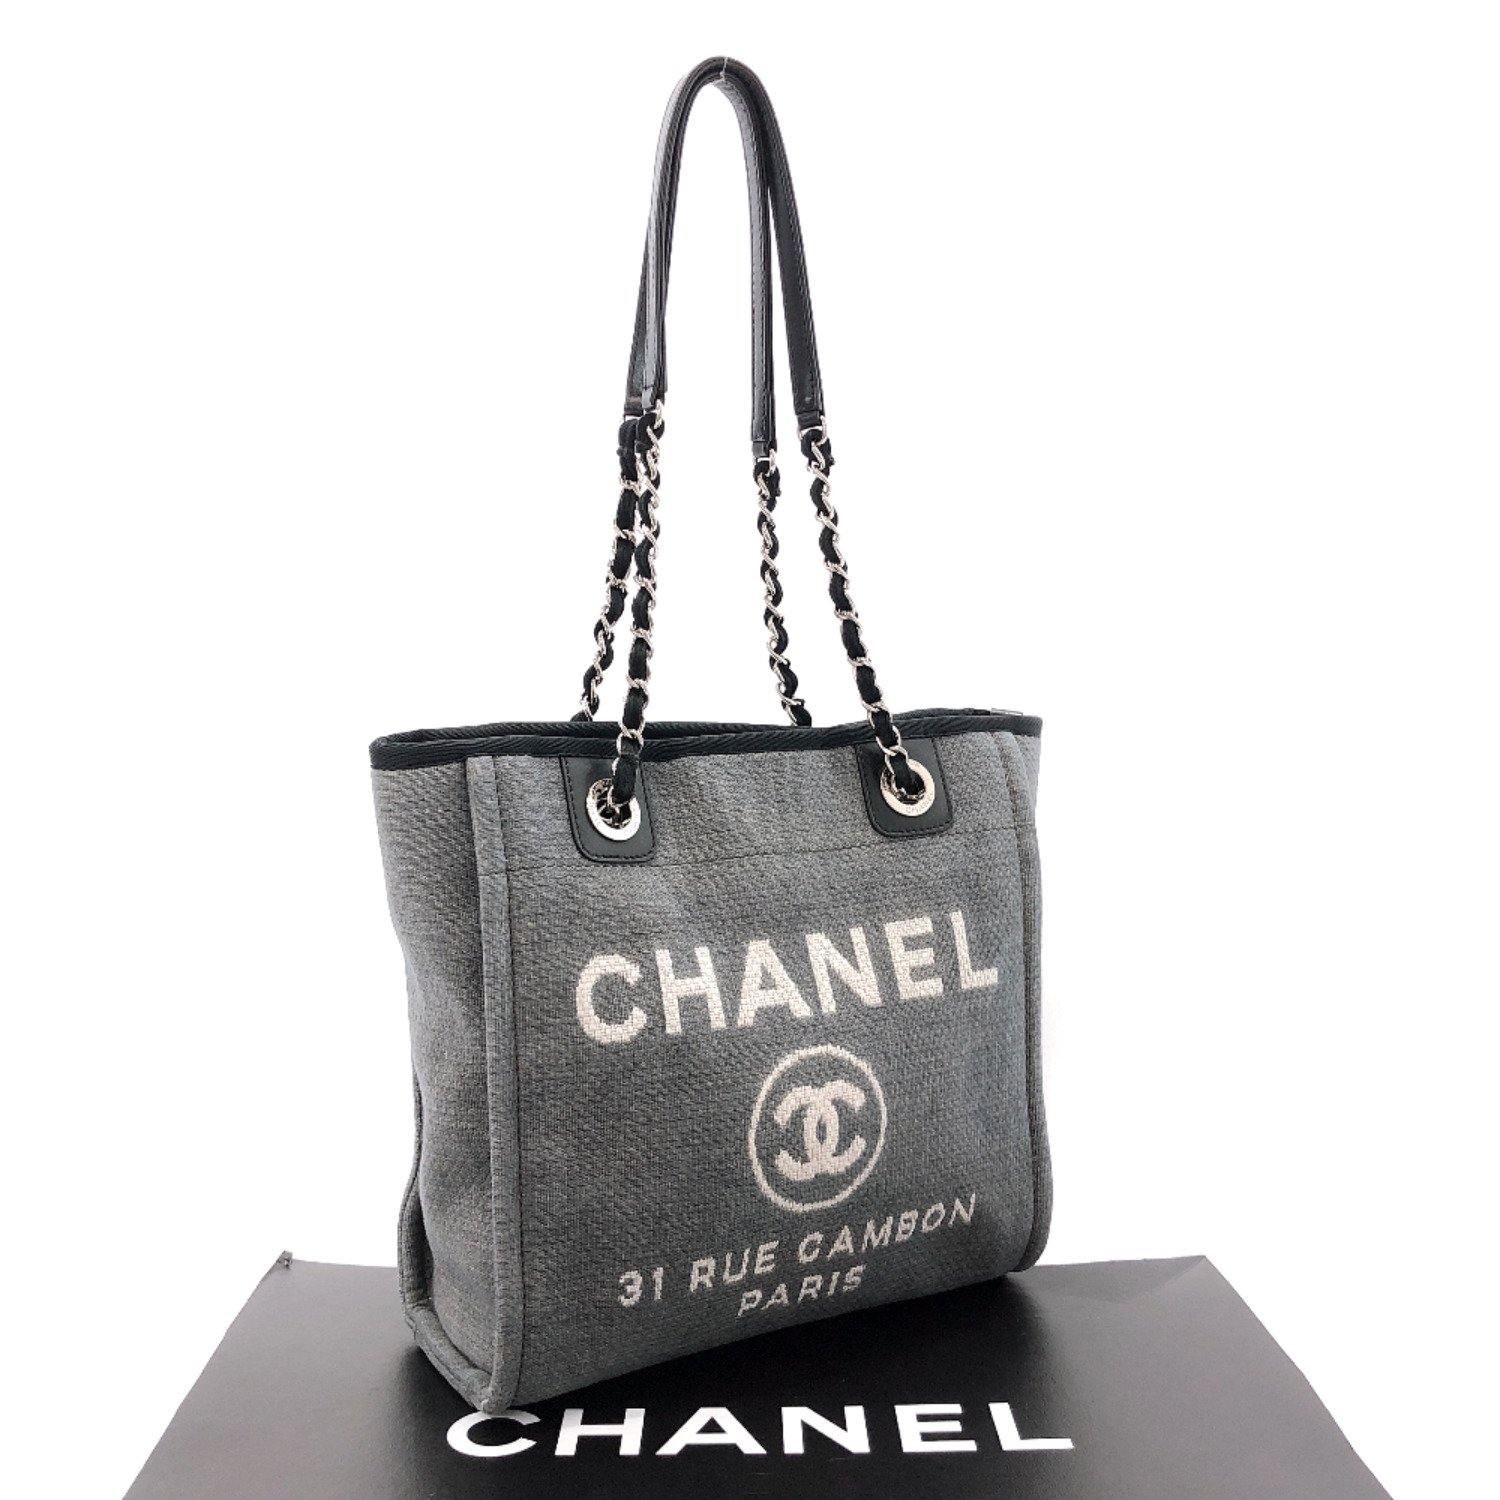 CHANEL Calfskin Large Essential 31 Rue Cambon Tote Shopper Shoulder Bag  Black